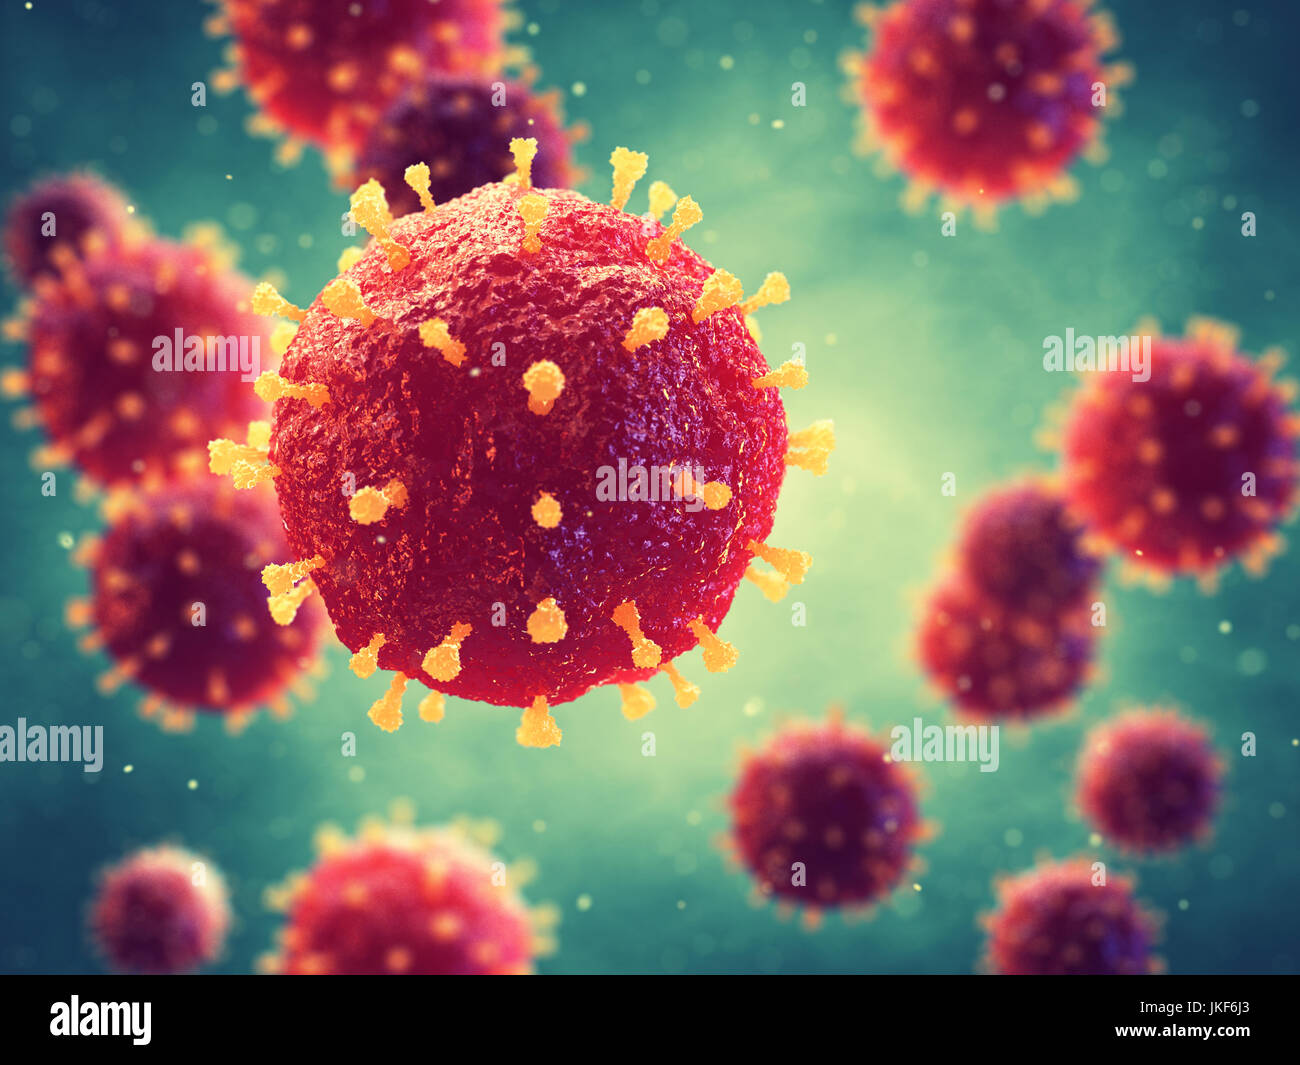 Les virus pathogènes qui causent l'infection dans l'organisme hôte , foyer de maladie virale Banque D'Images